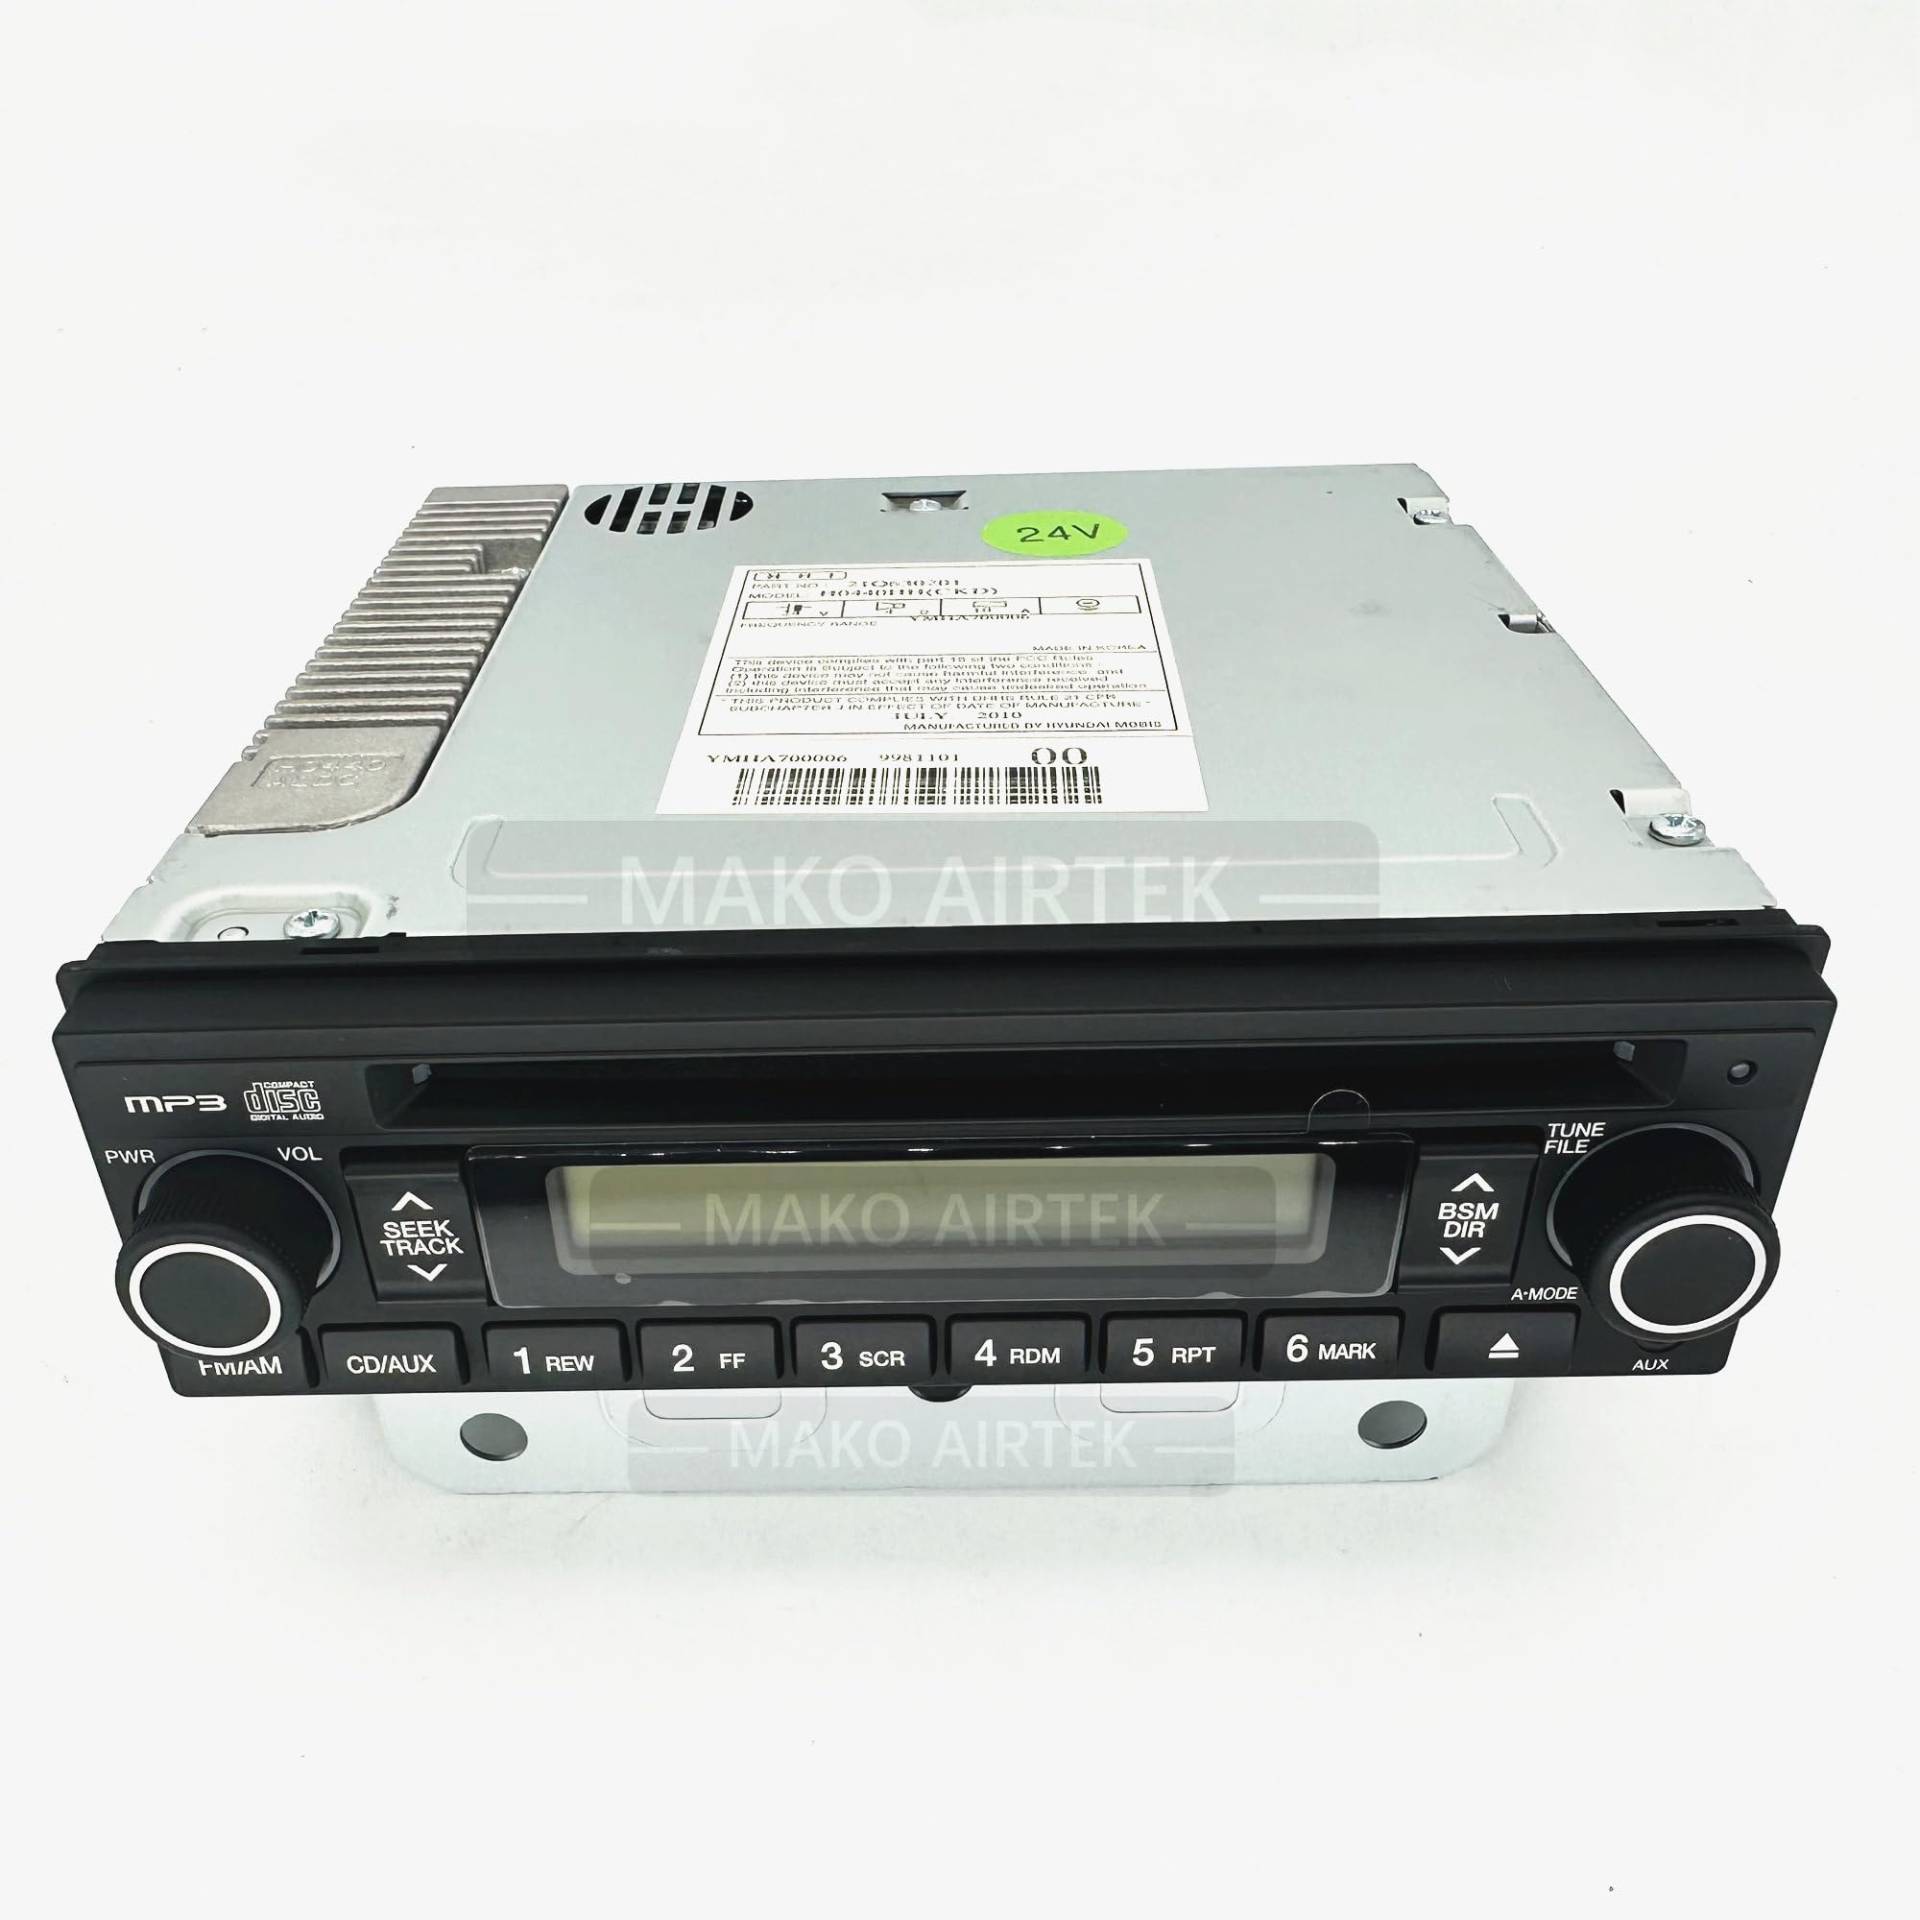 21Q6-30201 Radio passend für Hyundai Bagger von MAKO AIRTEK